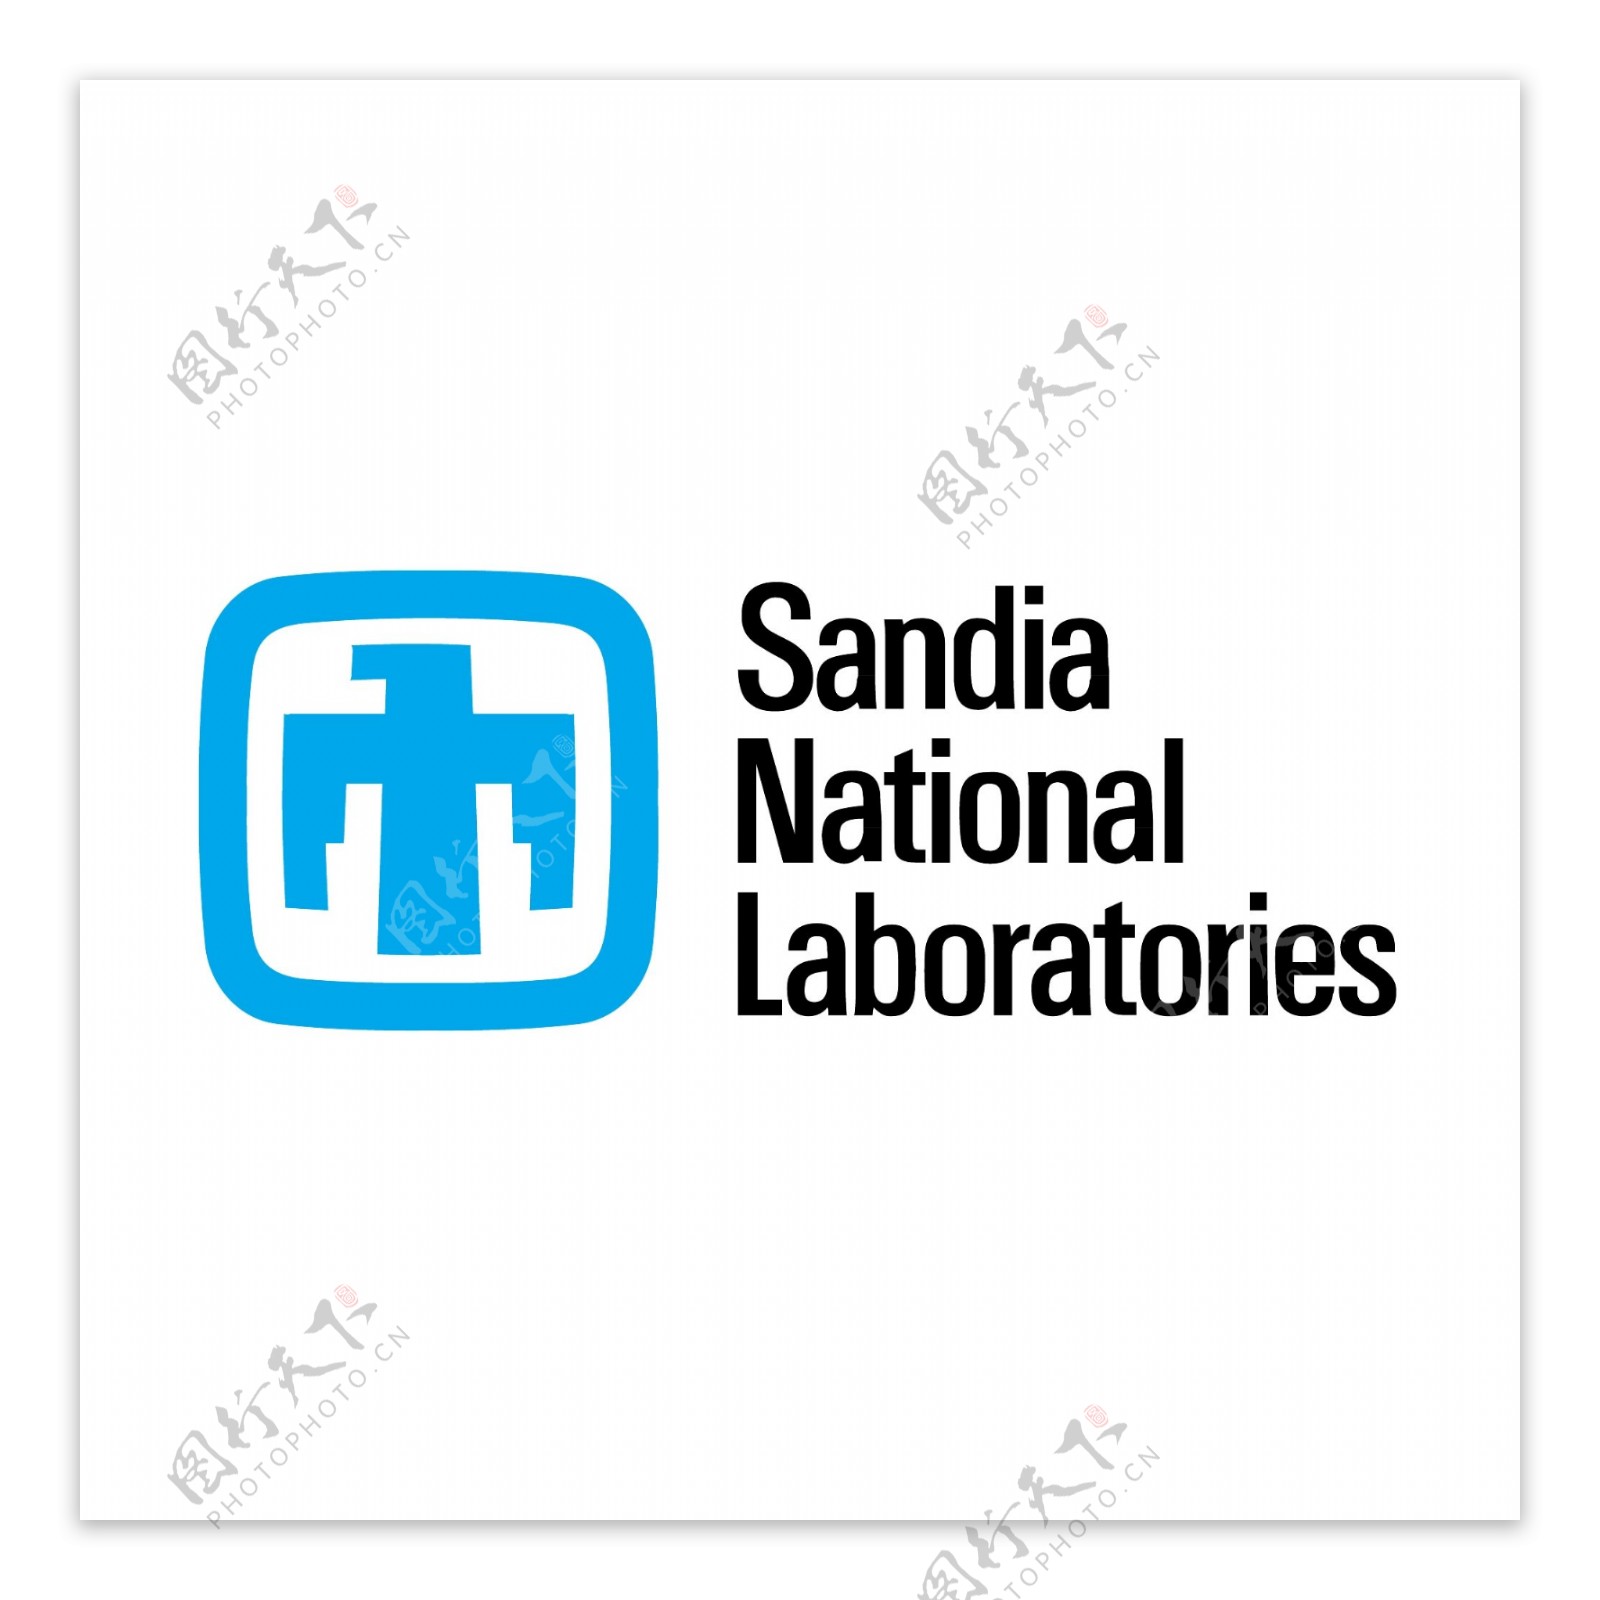 桑迪亚国家实验室